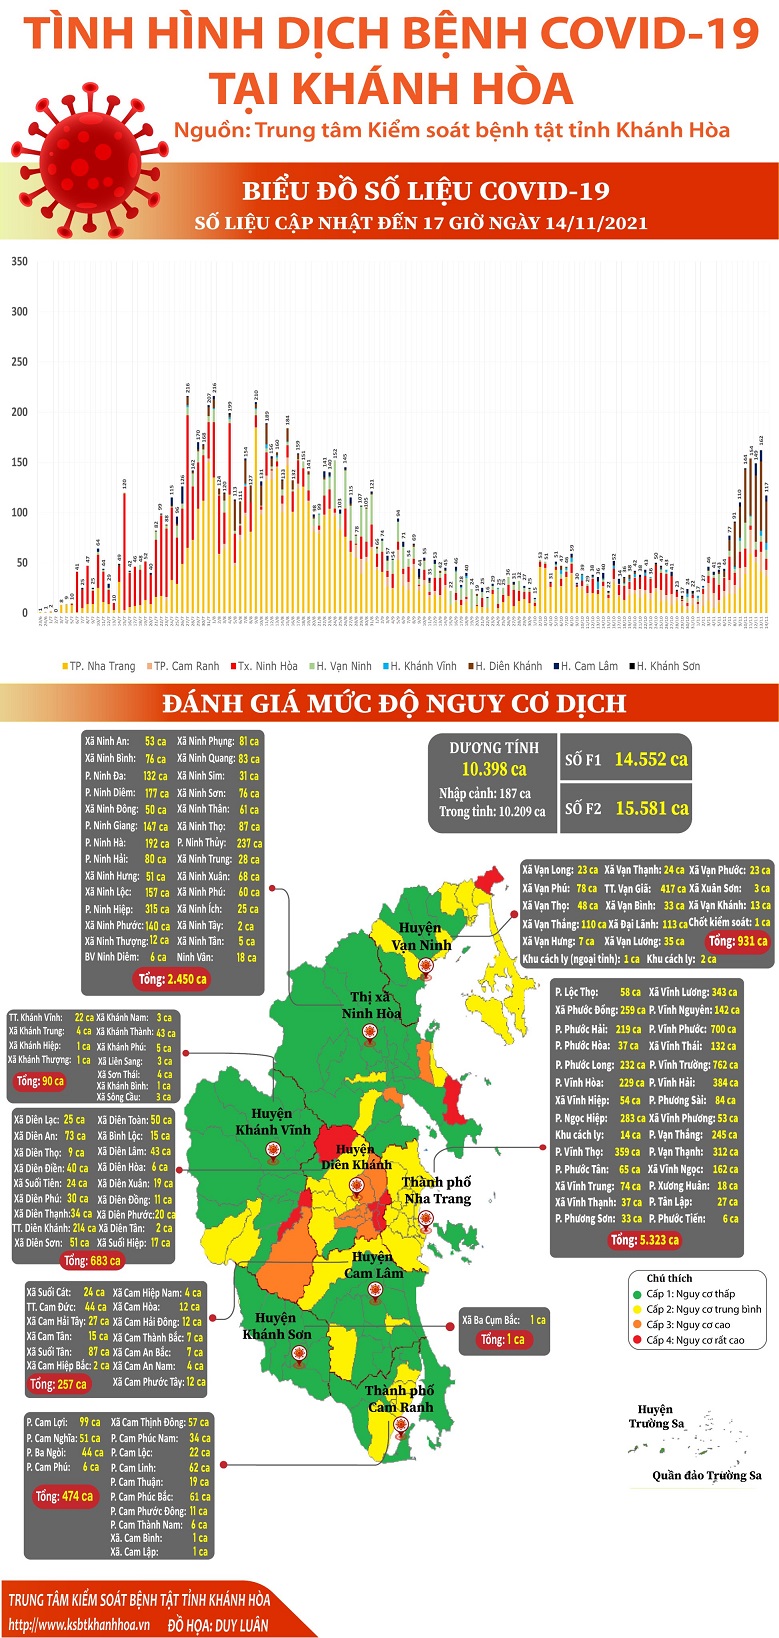 Biểu đồ tình hình dịch bệnh COVID-19 tại Khánh Hòa (Cập nhật đến 17h00 ngày 14/11/2021)